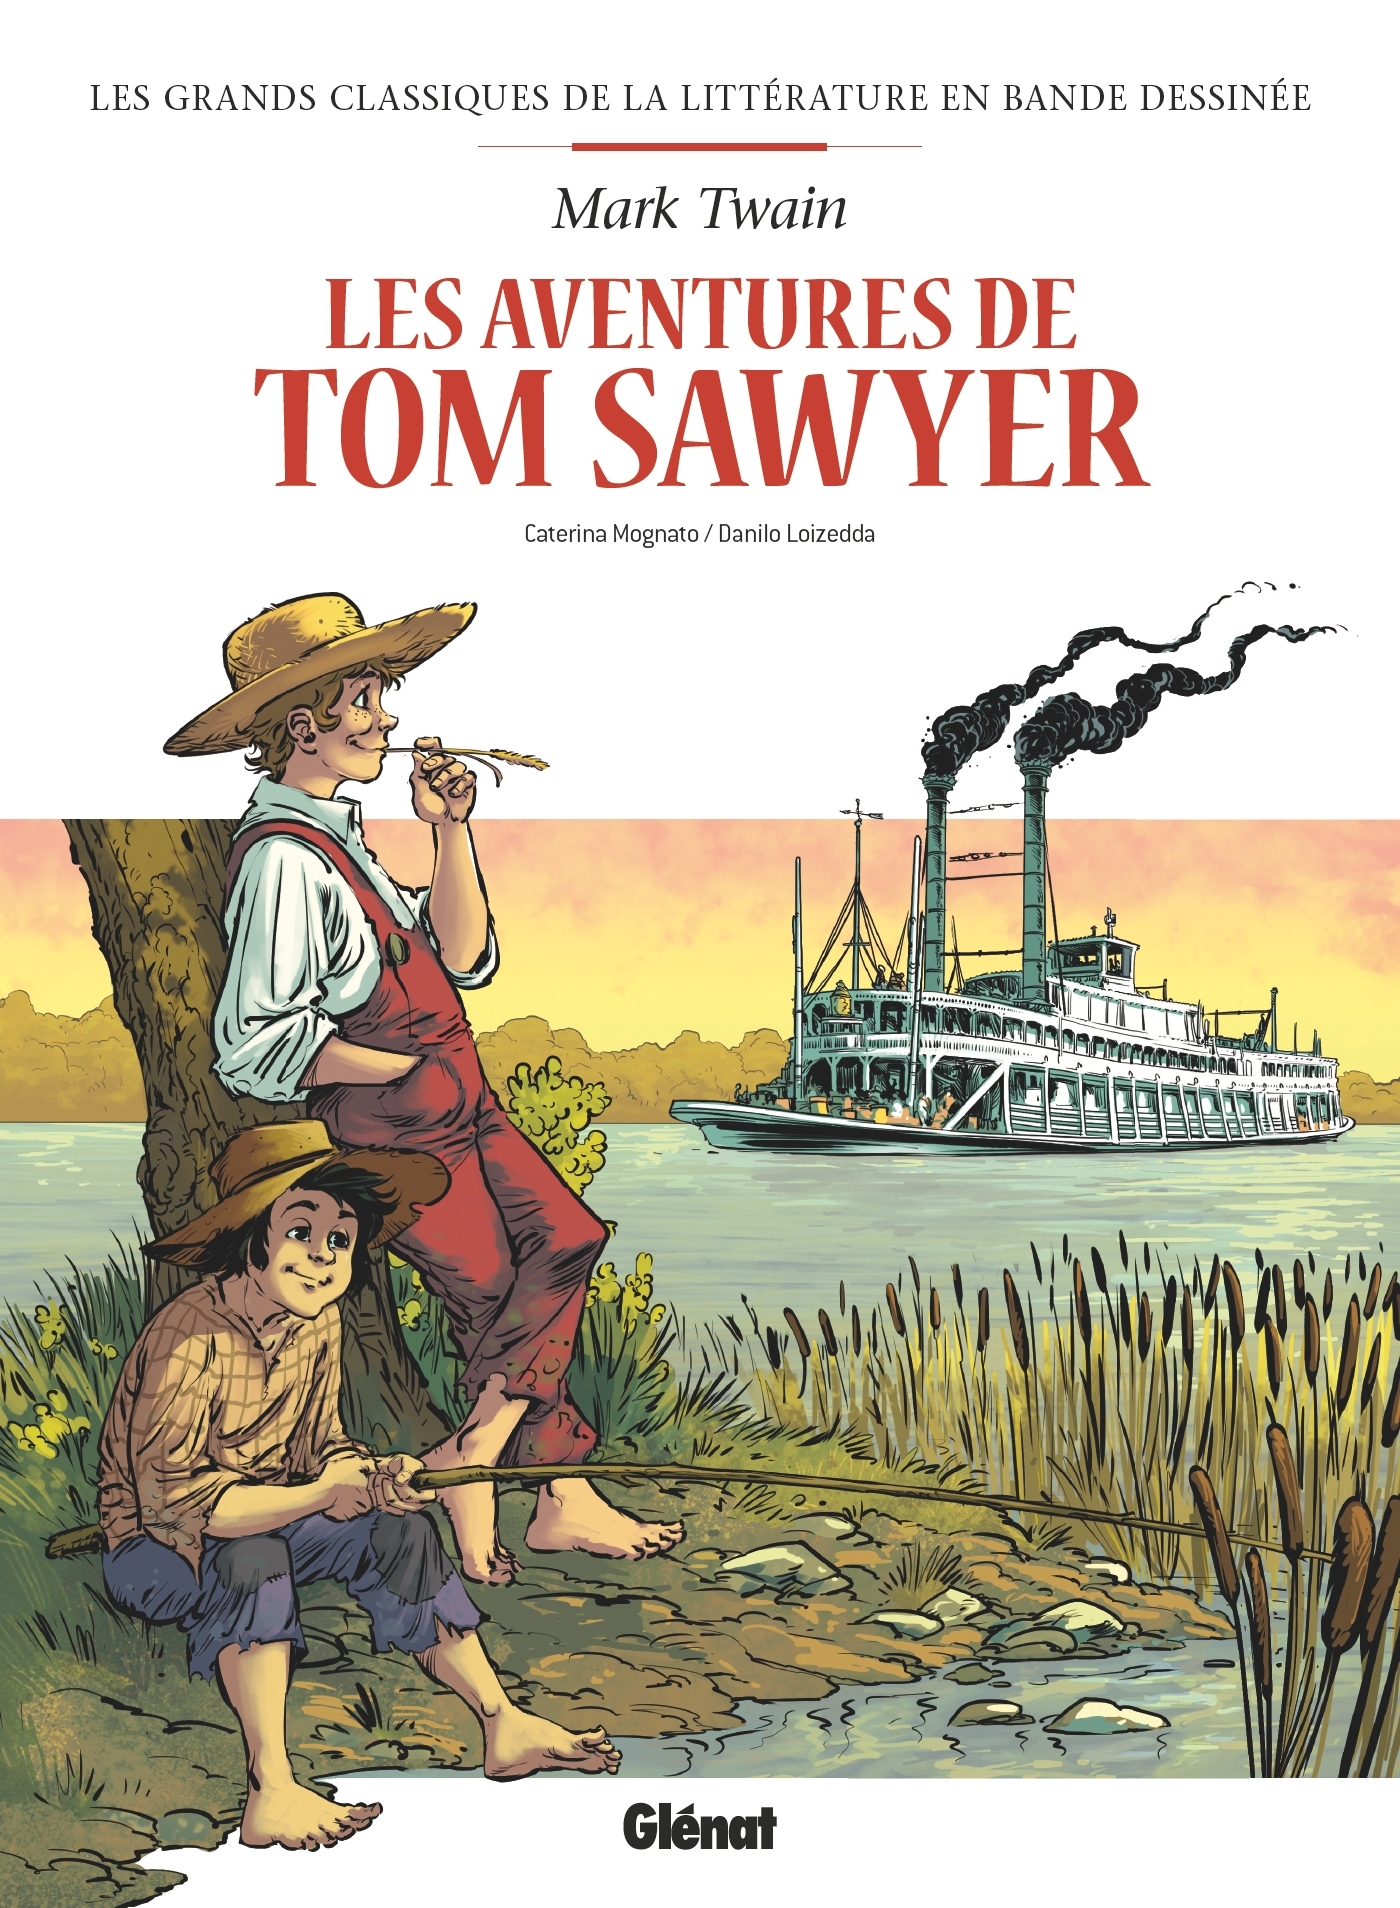 Tom Sawyer en BD (9782344027943-front-cover)